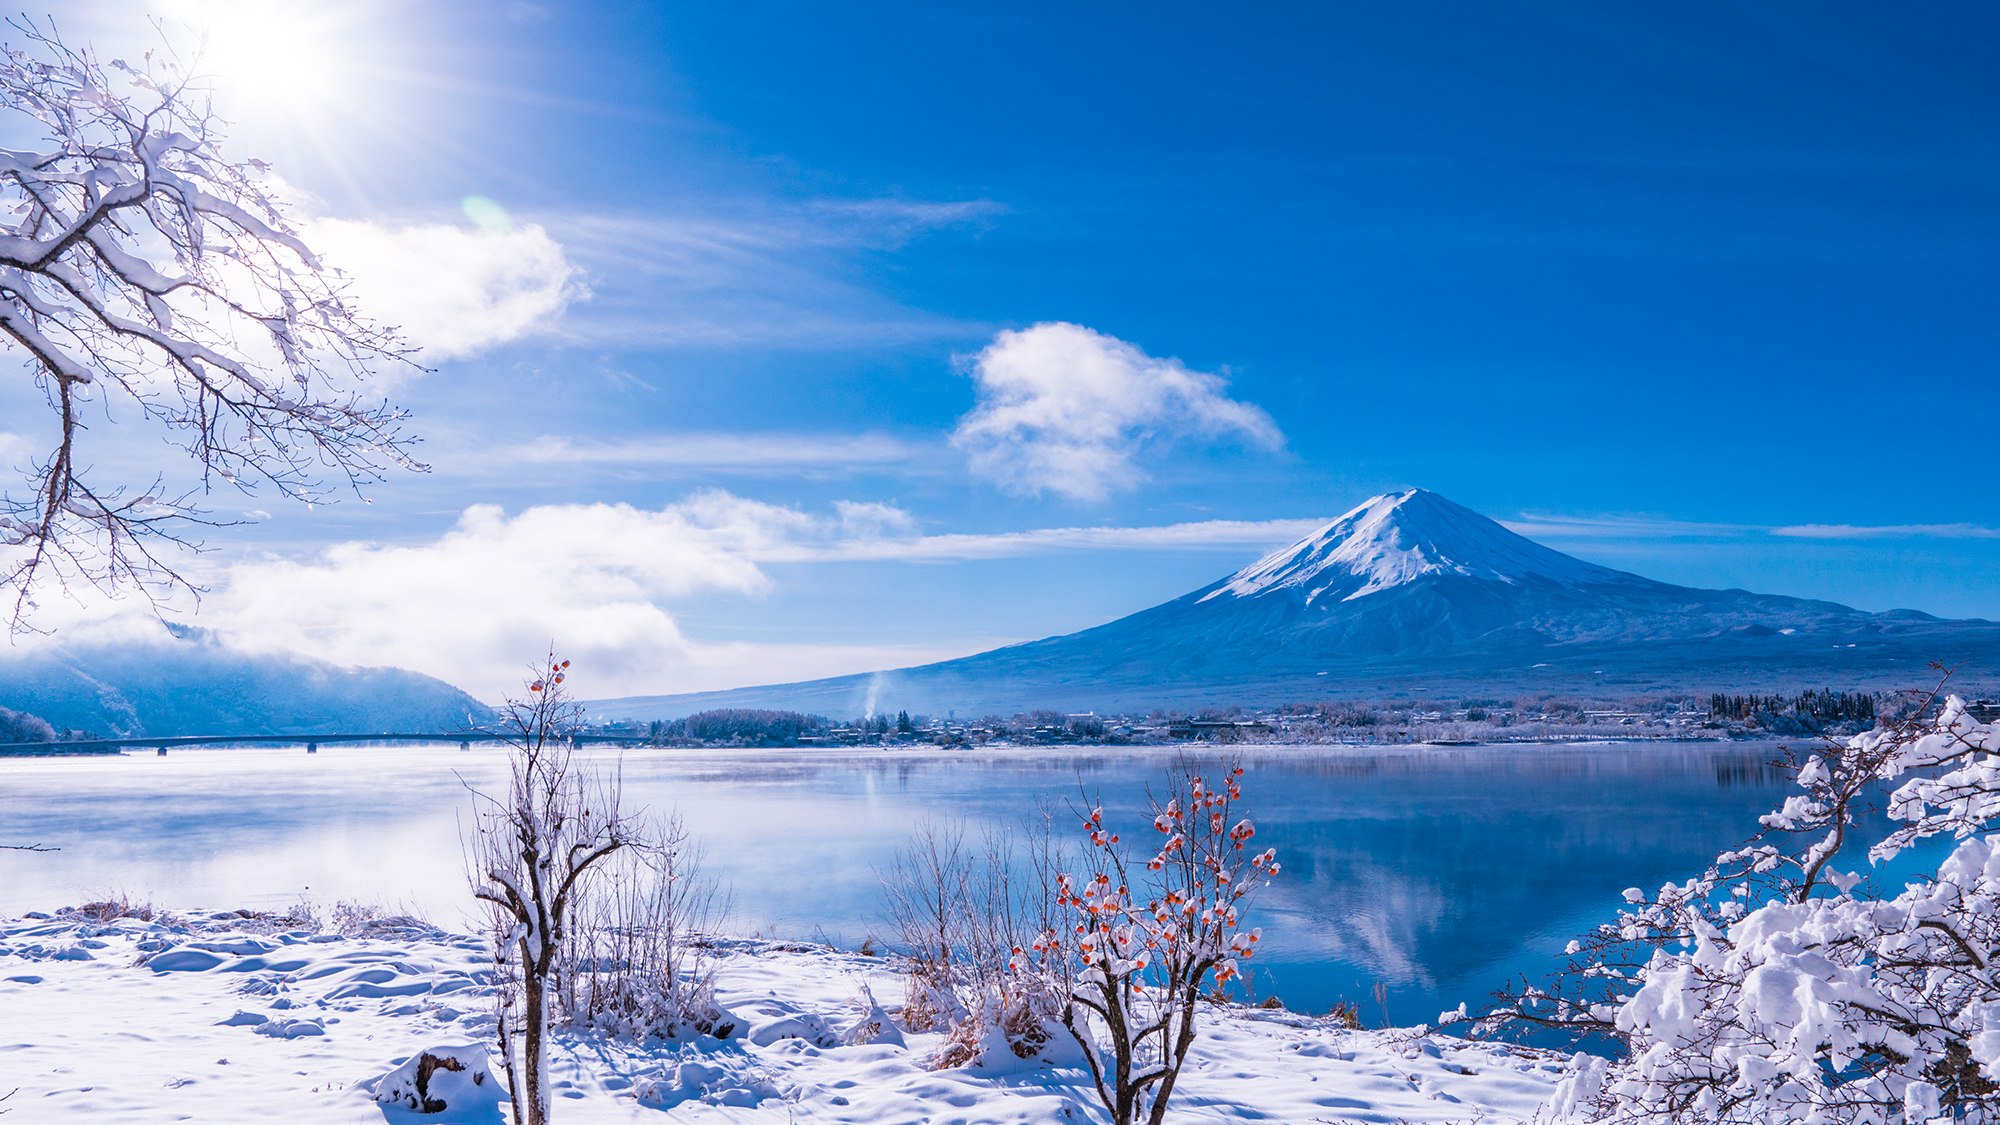 凛と澄んだ空気が富士山の荘厳さを引き立てます